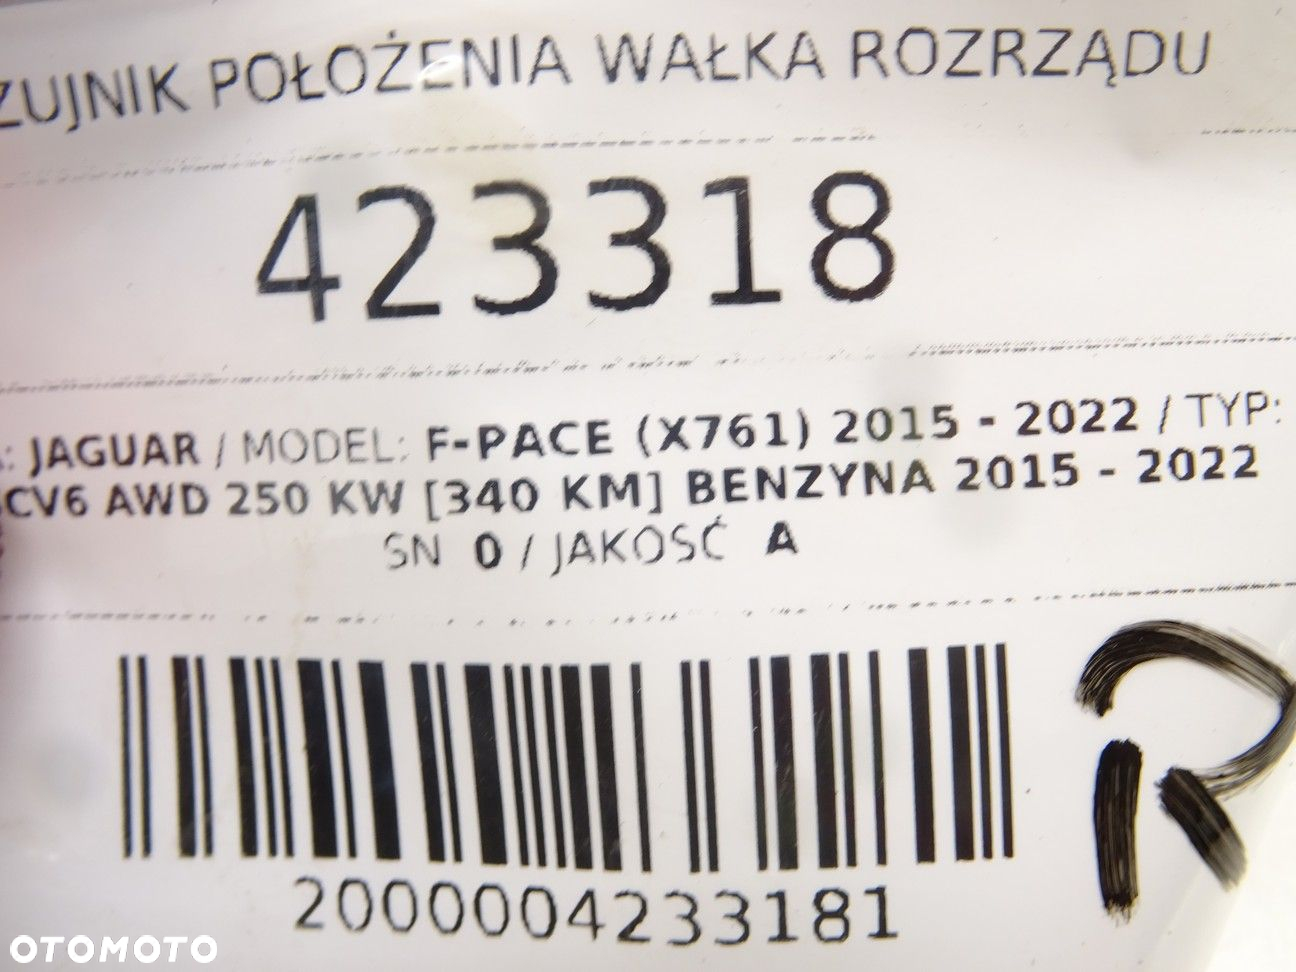 CZUJNIK POŁOŻENIA WAŁKA ROZRZĄDU JAGUAR F-PACE (X761) 2015 - 2022 3.0 SCV6 AWD 250 kW [340 KM] - 5